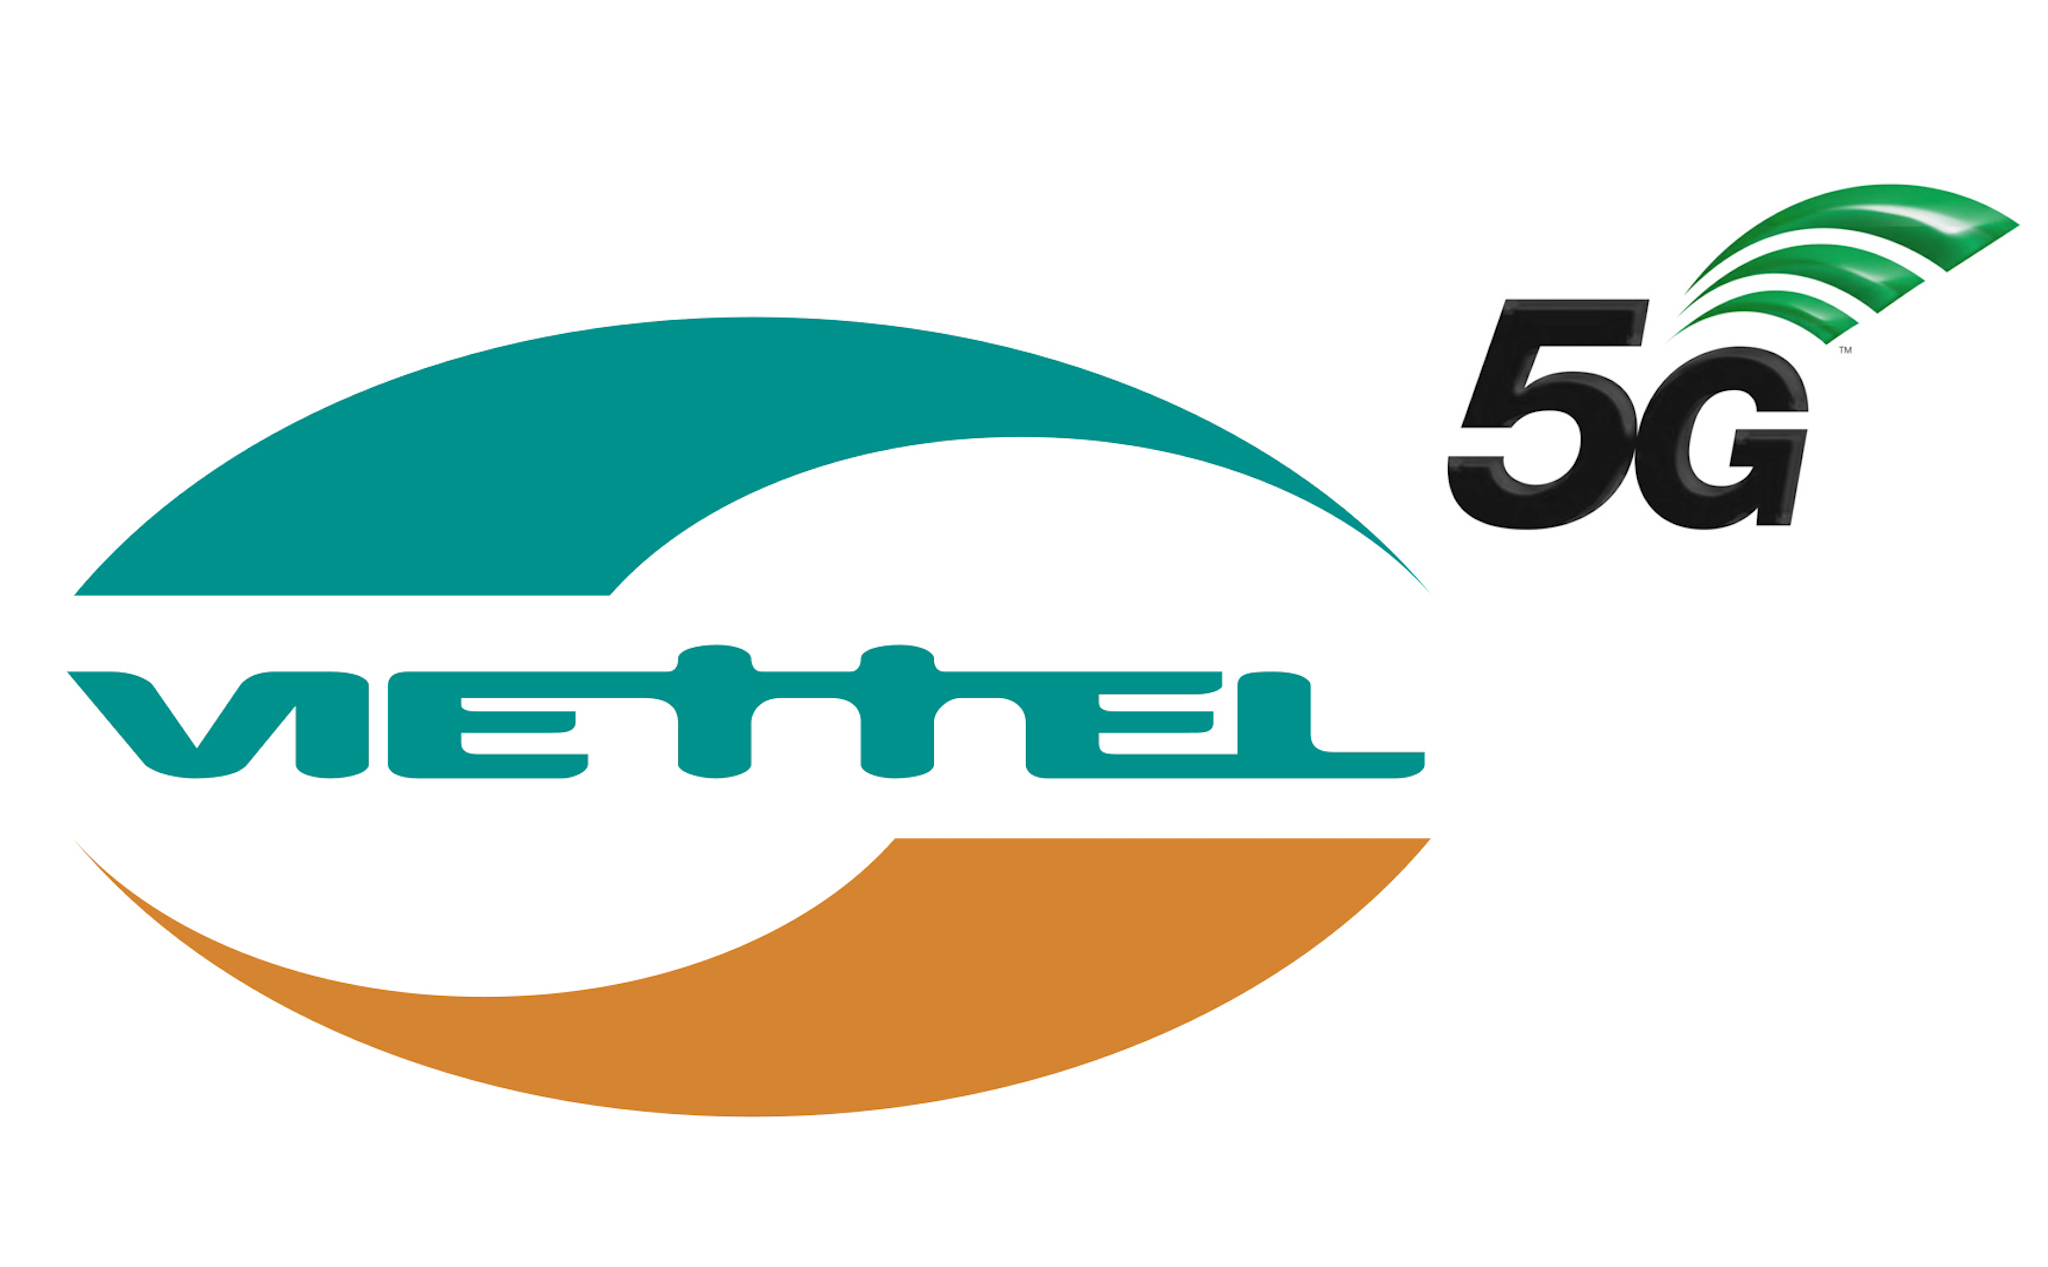 Viettel lắp trạm phát sóng 5G đầu tiên tại Hà Nội